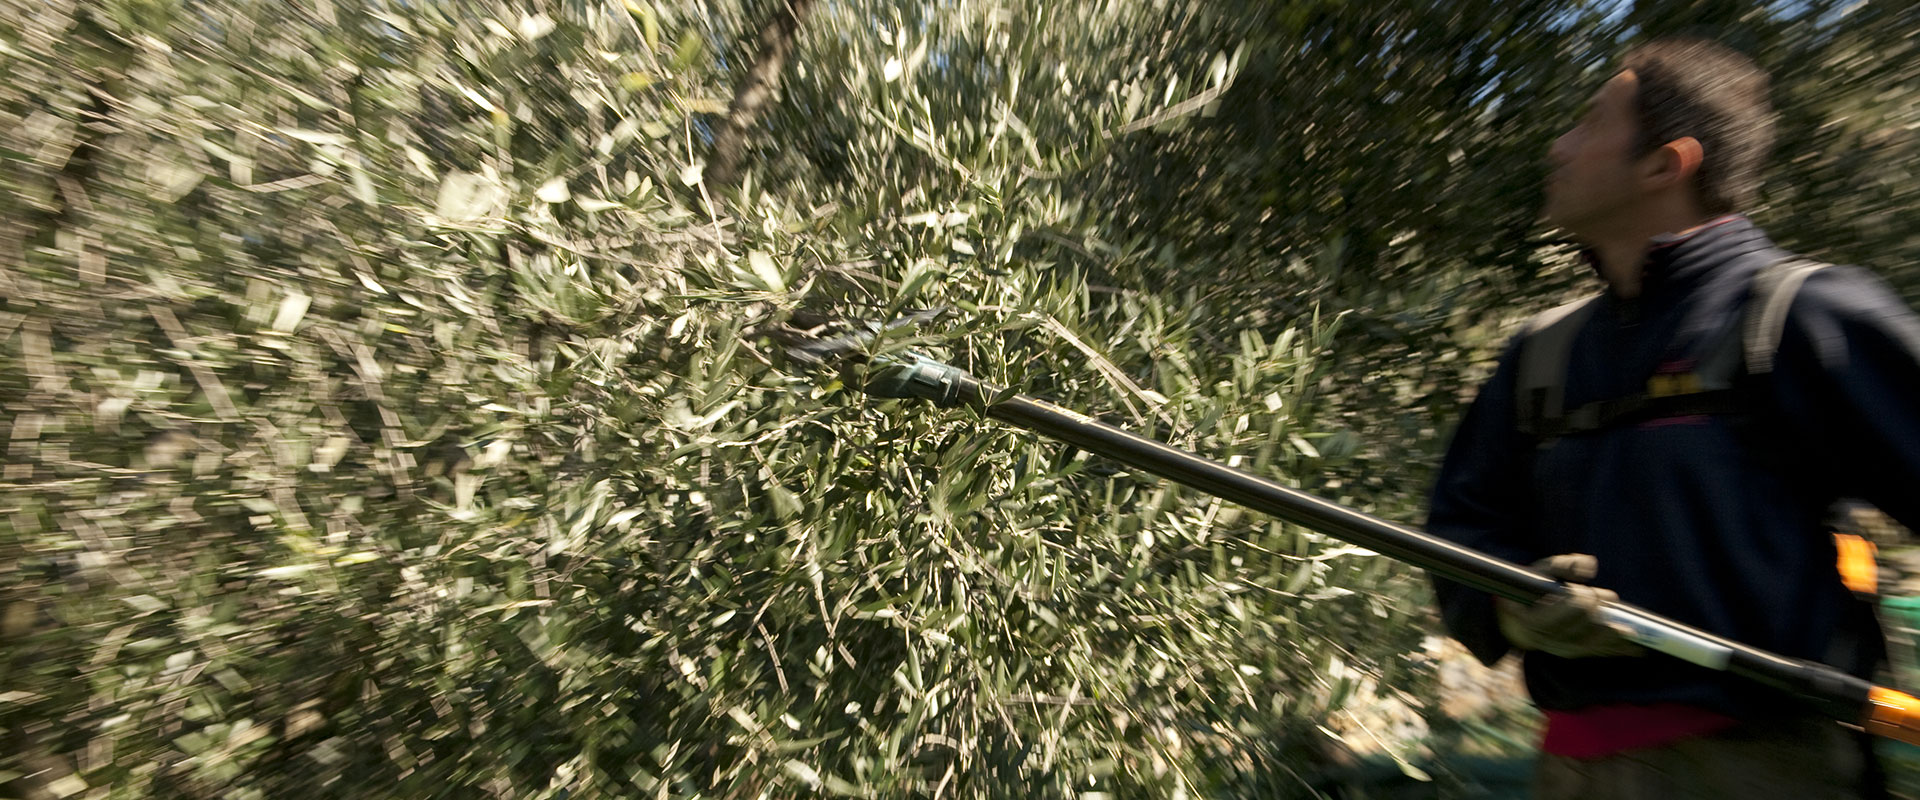 Periodo di raccolta delle olive – Fratelli Carli